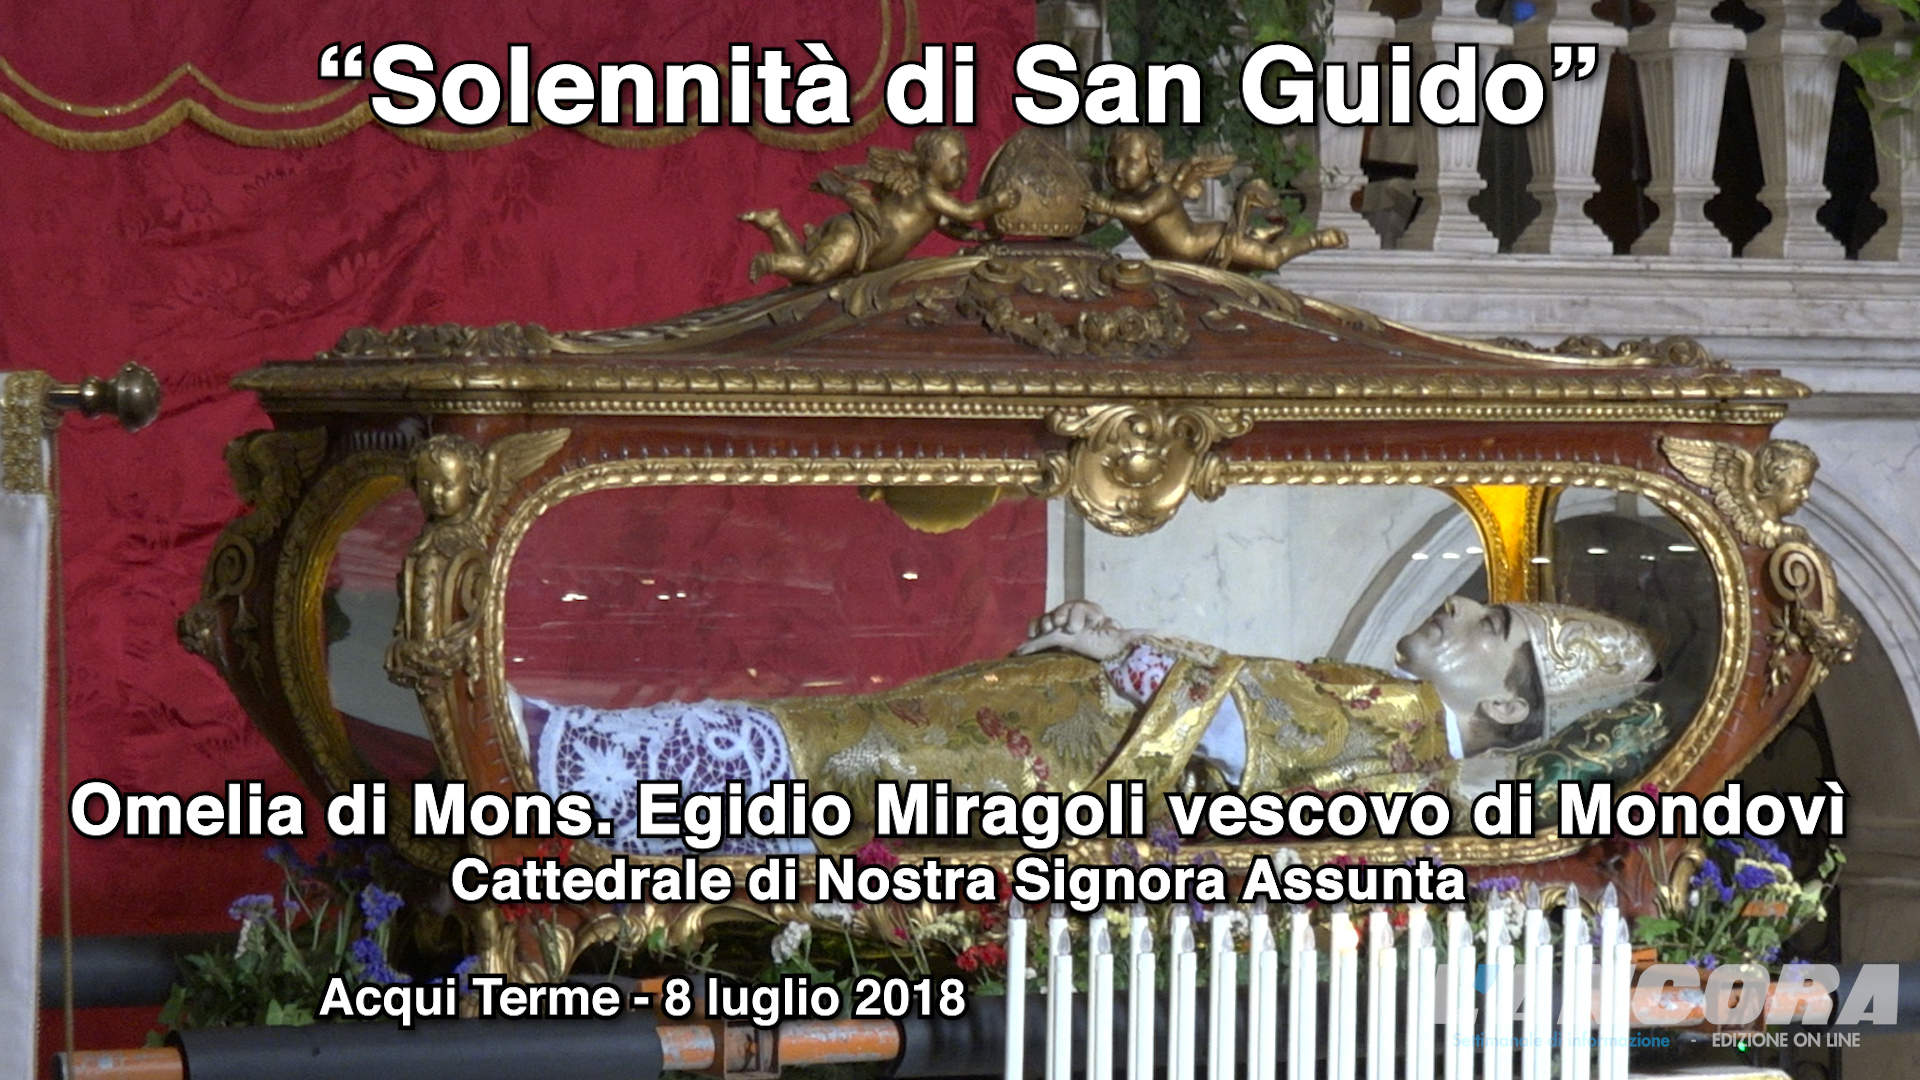 Solennità di San Guido - Omelia di Mons. Egidio Miragoli (VIDEO)